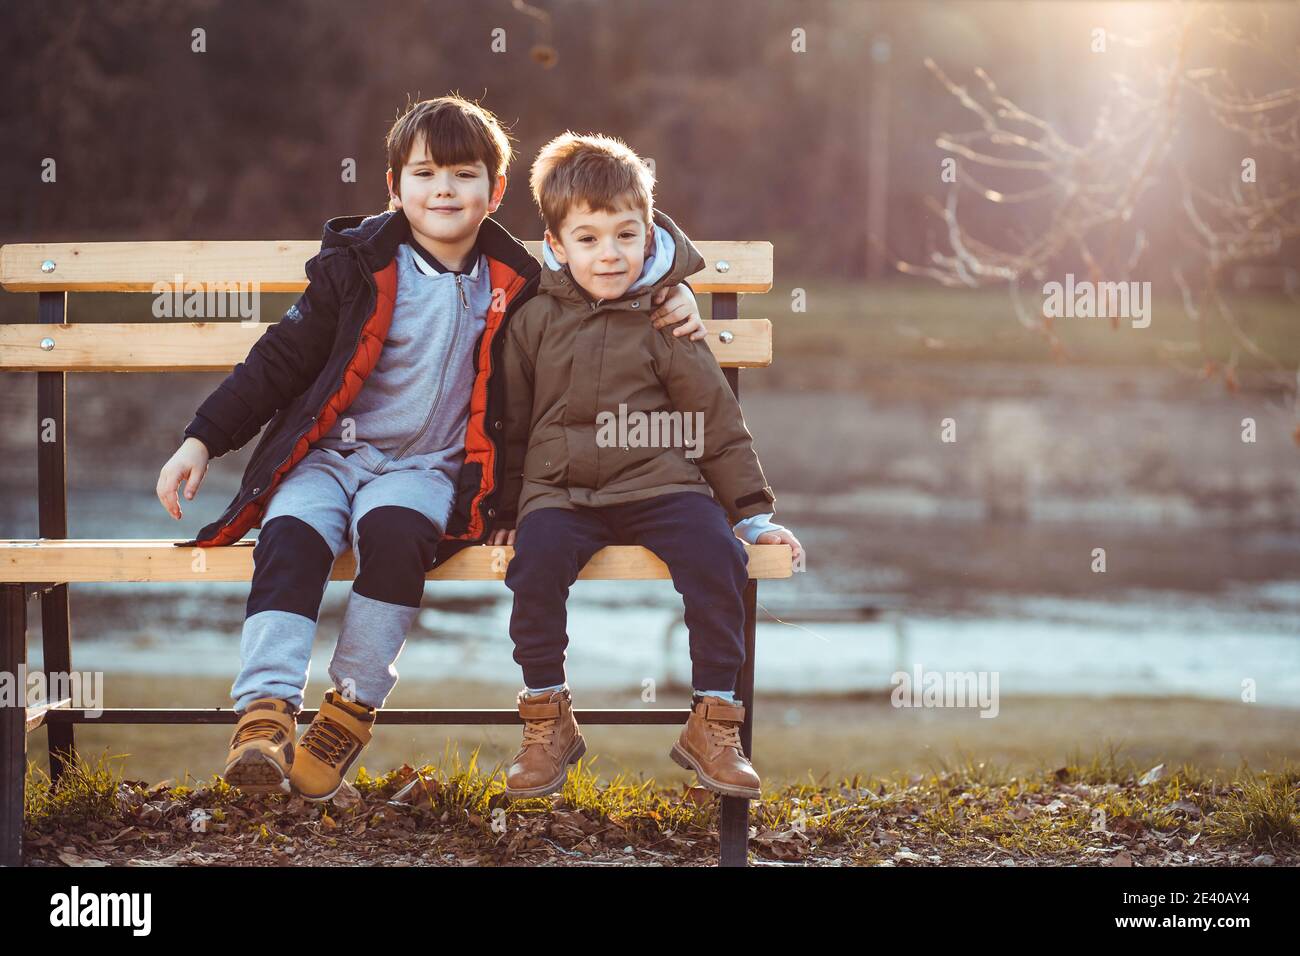 Deux petits garçons, frères, assis sur un banc, affectueux l'un avec l'autre. Copier l'espace Banque D'Images